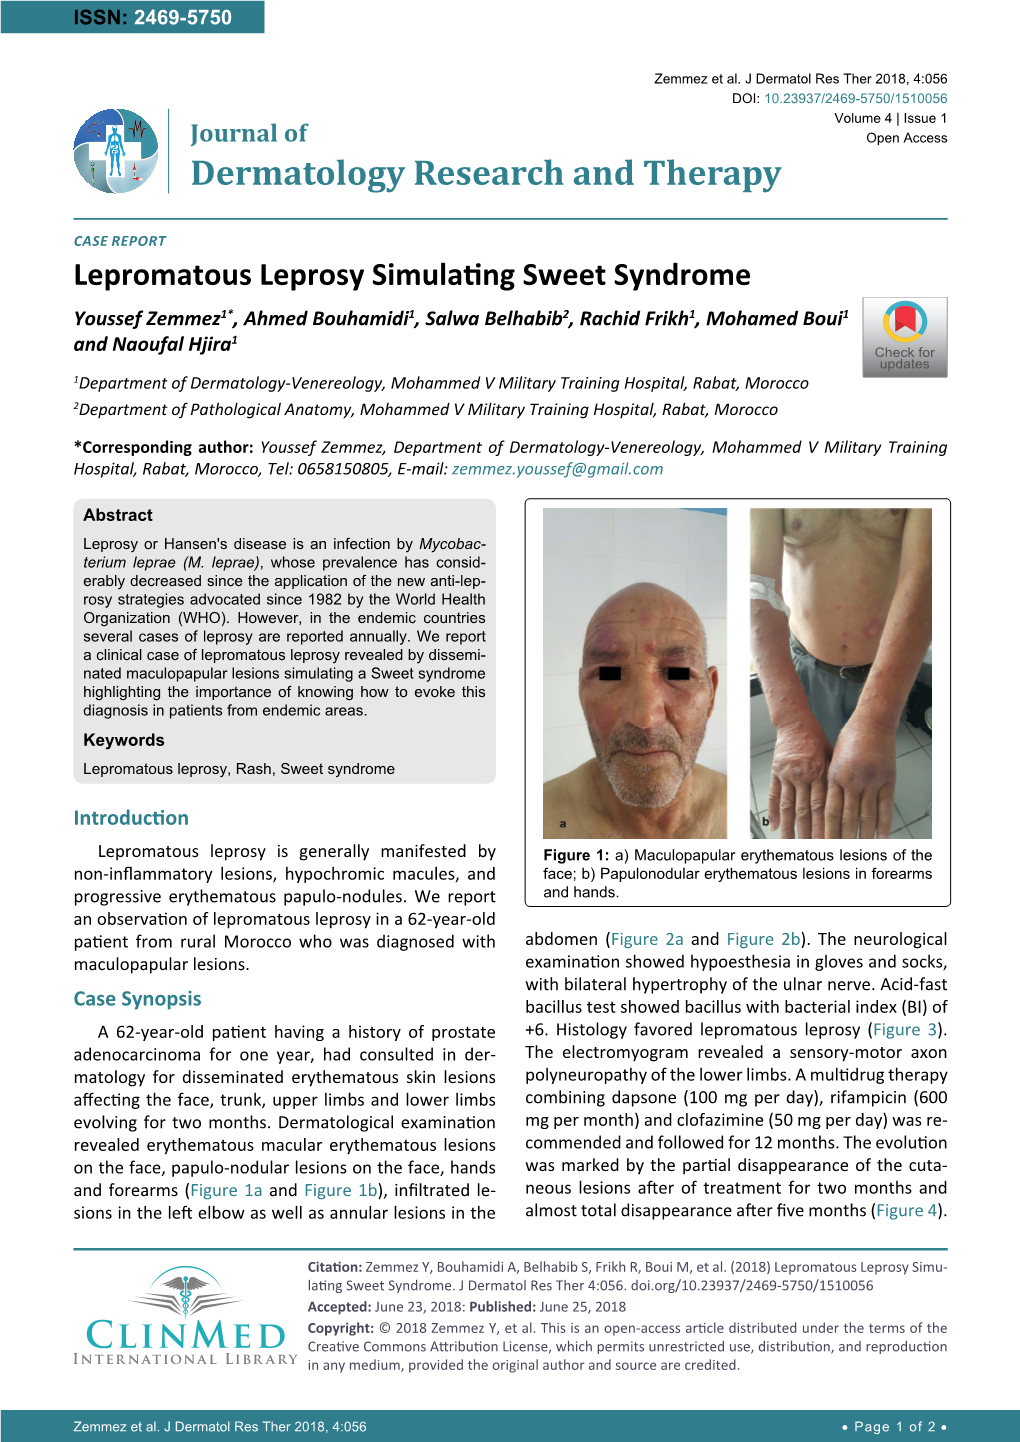 Lepromatous Leprosy Simulating Sweet Syndrome